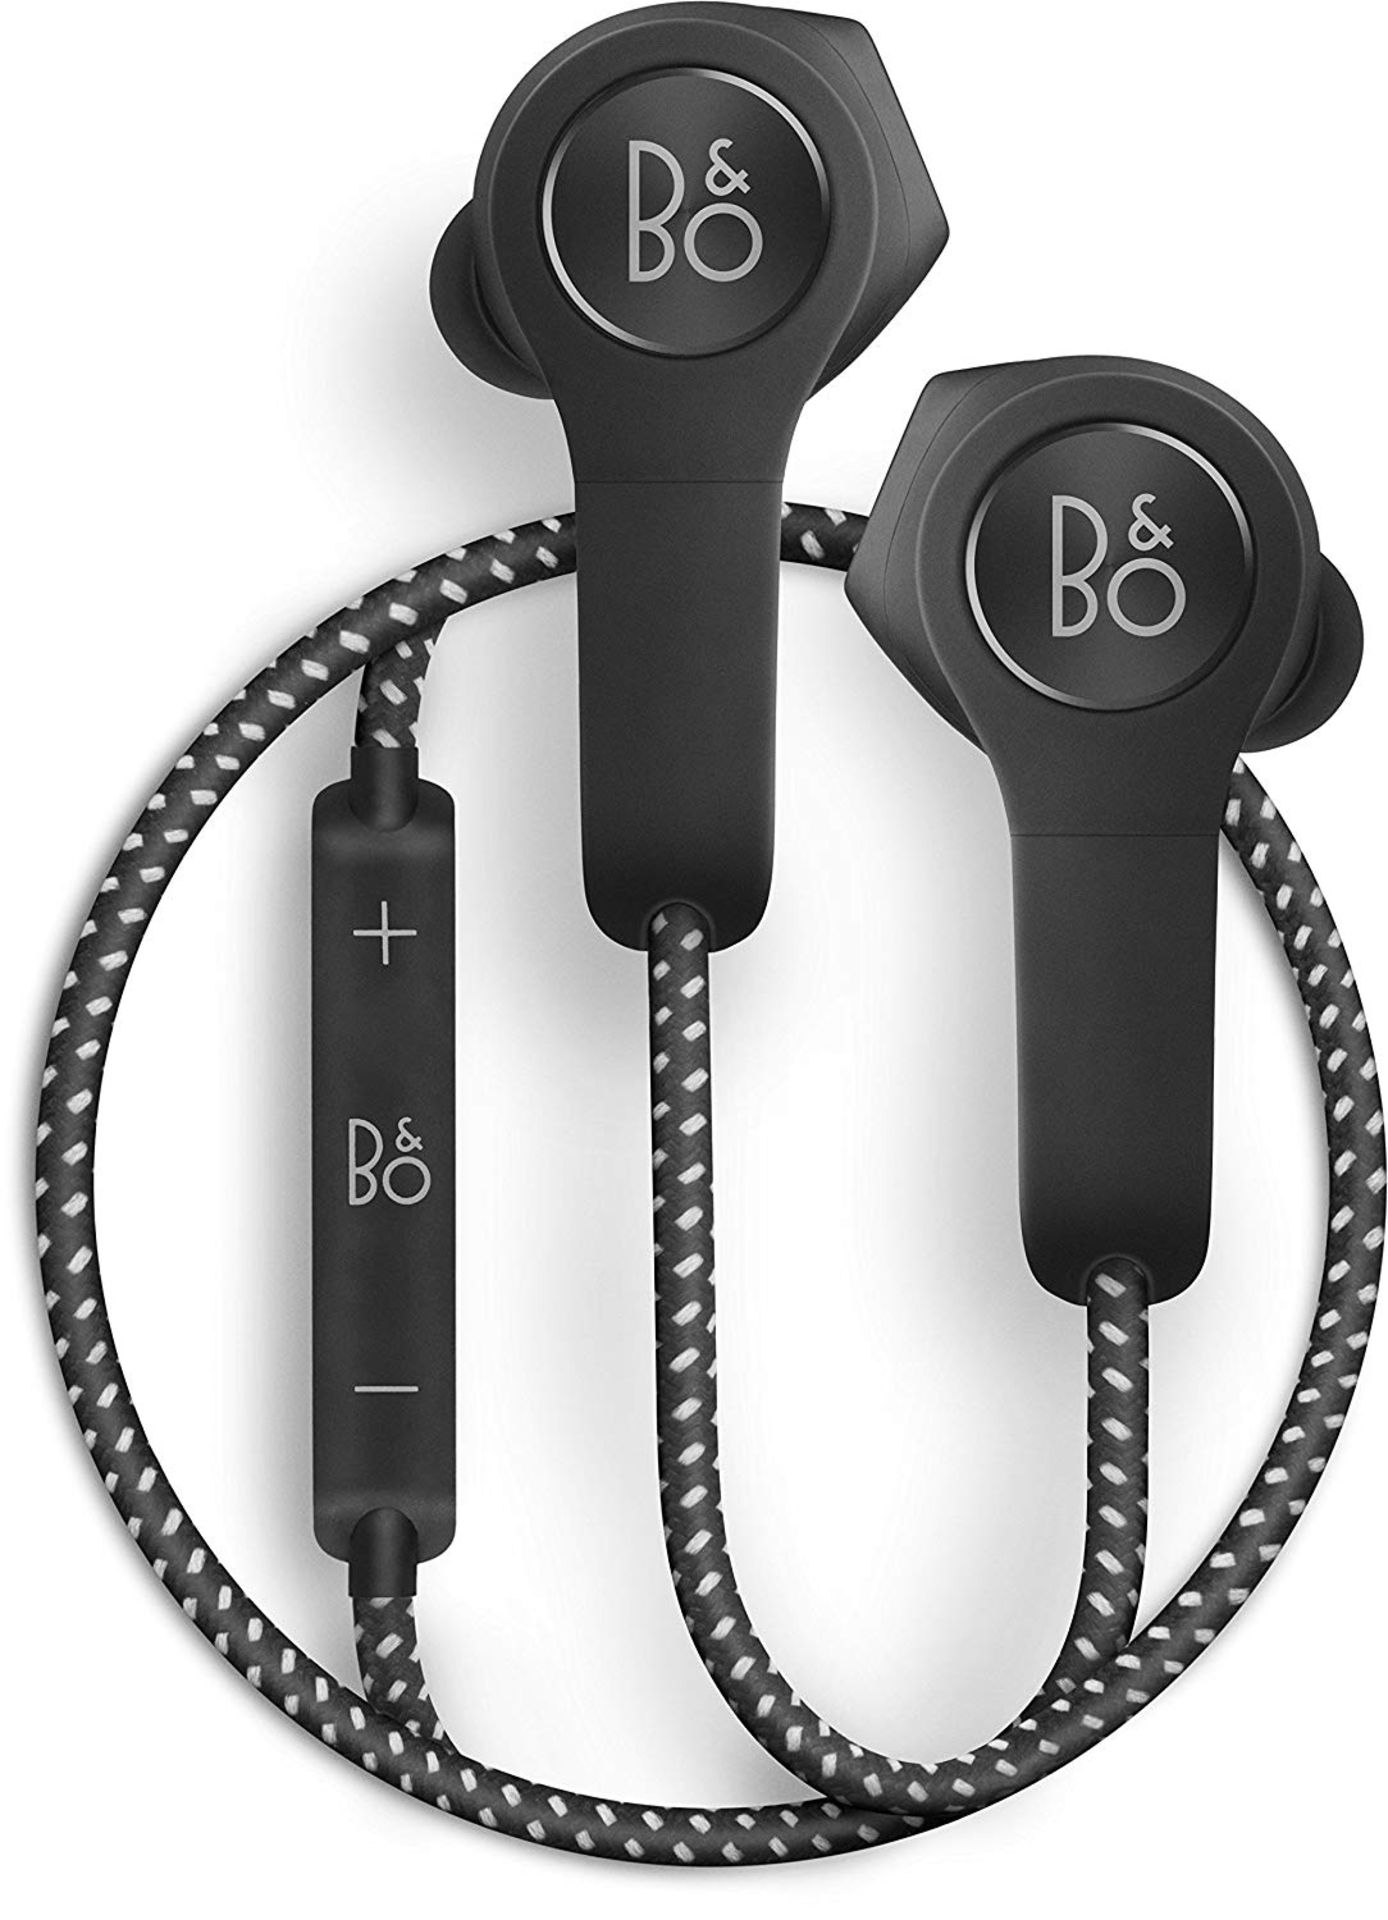 + VAT Grade A Bang & Olufsen Beoplay H5 Black Wireless Bluetooth Earphones